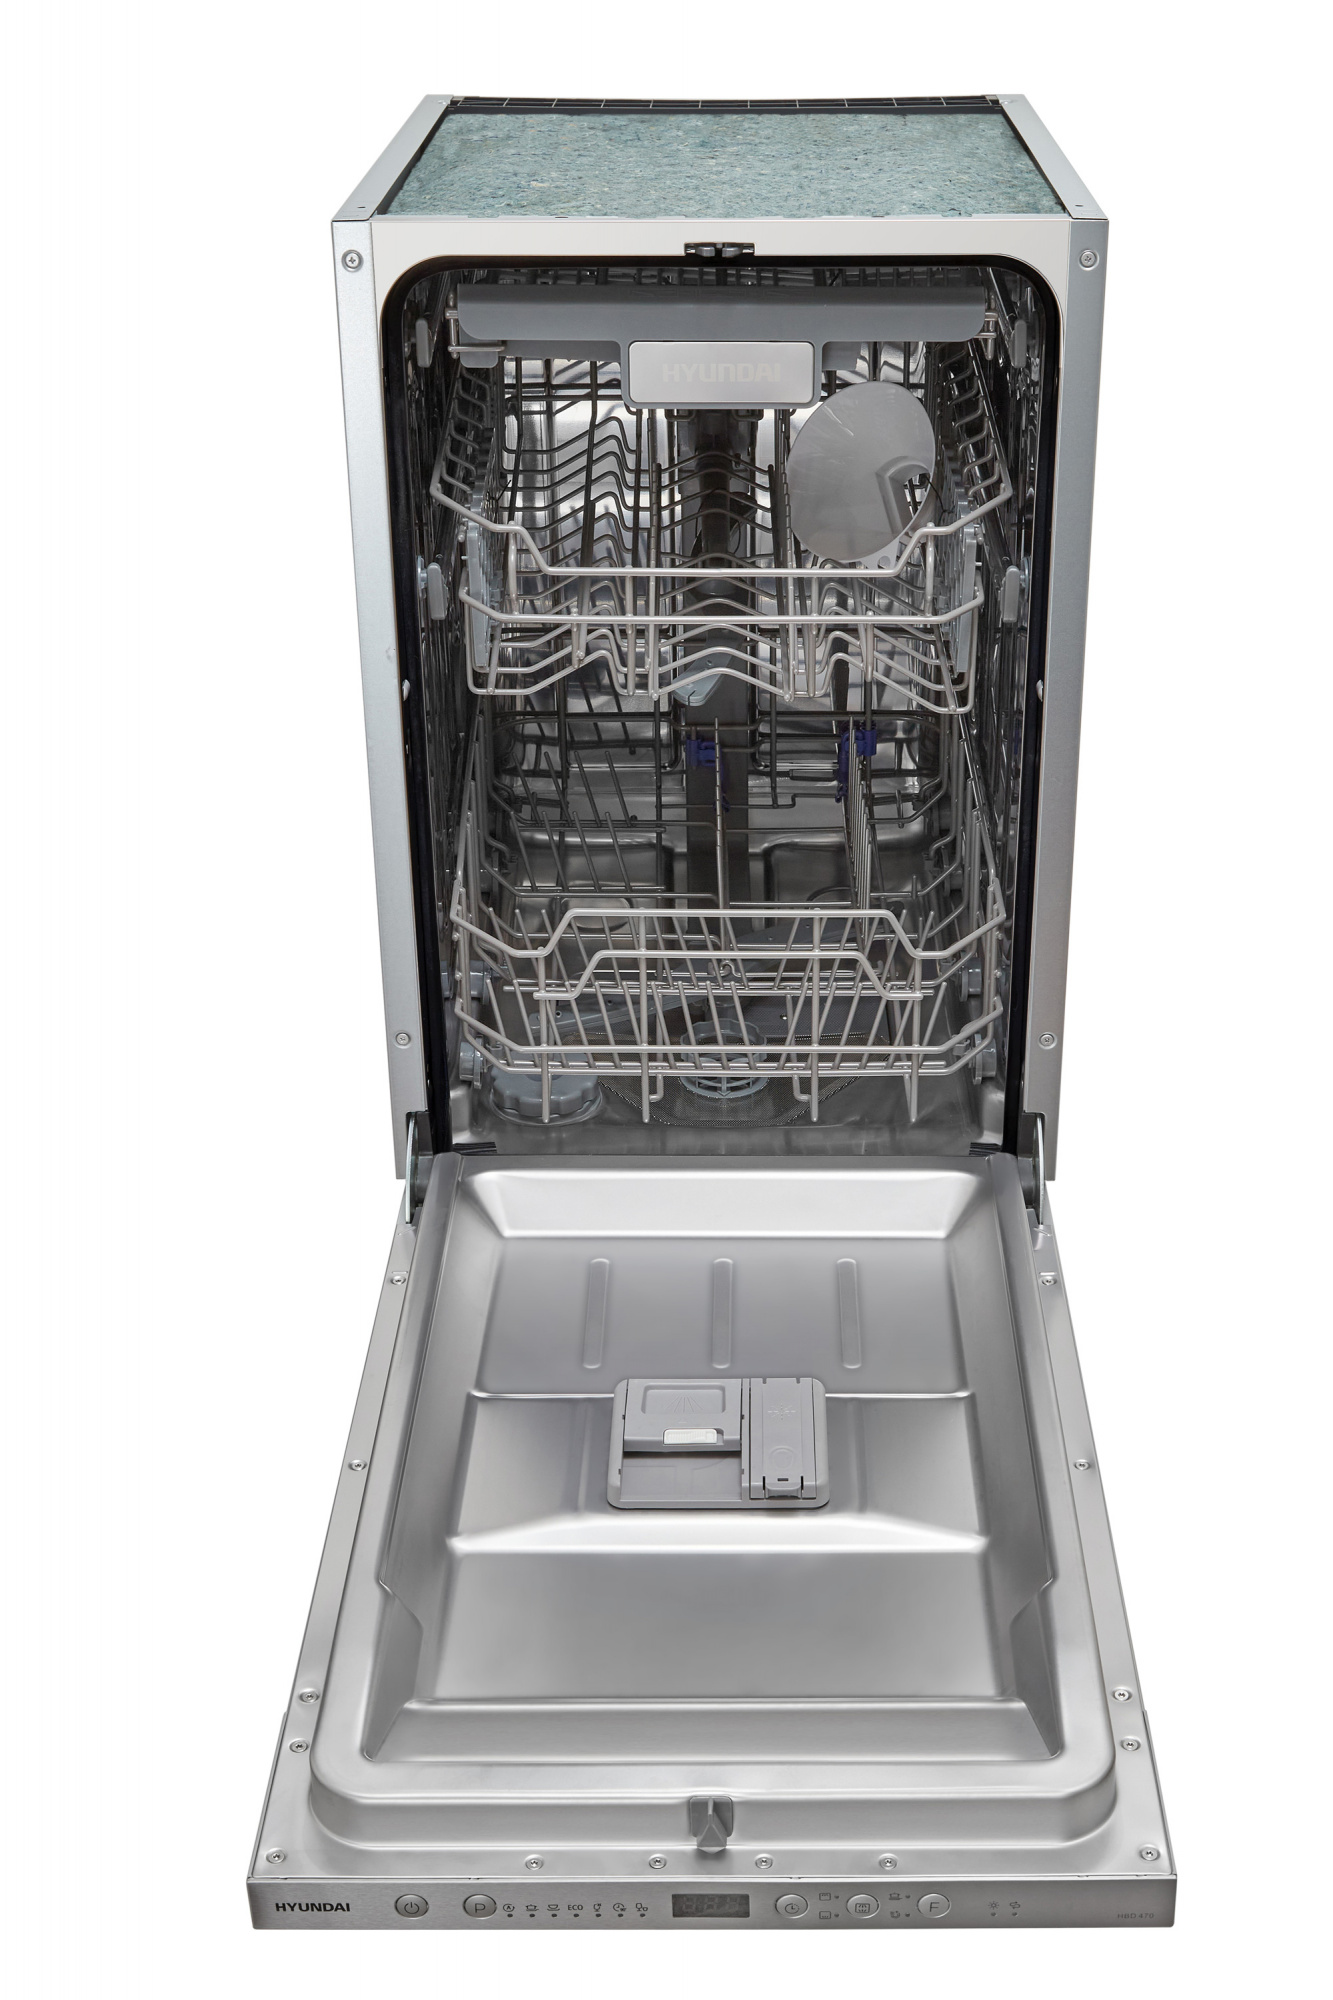 Посудомоечная машина Hyundai HBD 470 2100Вт полноразмерная